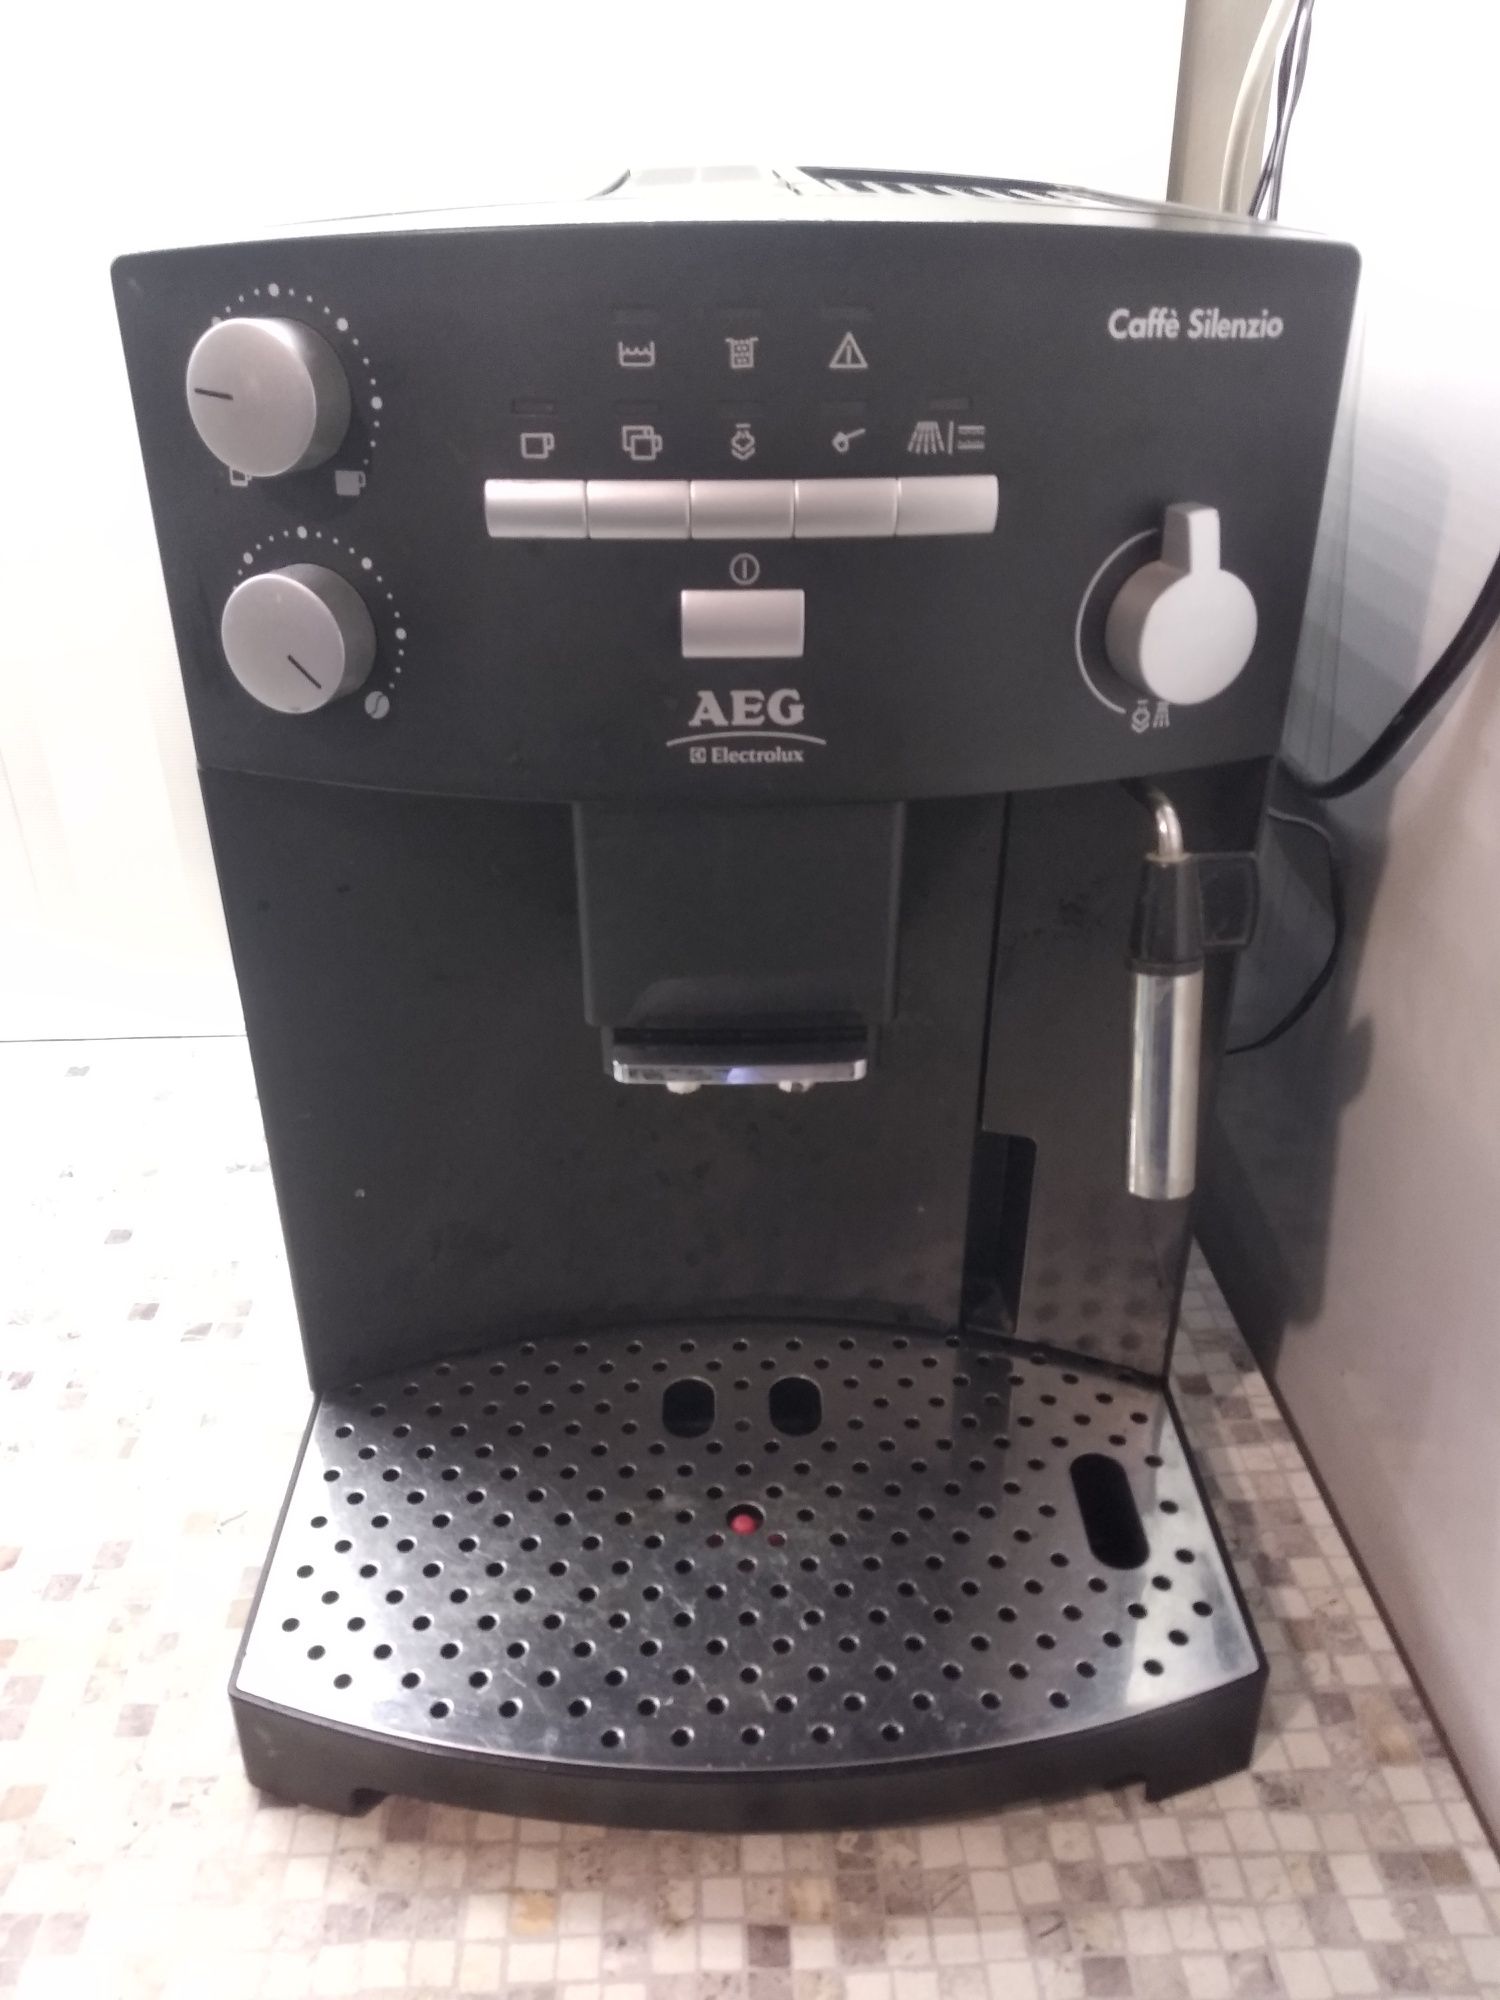 Кафе автомат Delonghi/ AEG. Промо цена 160лв до Нова година!